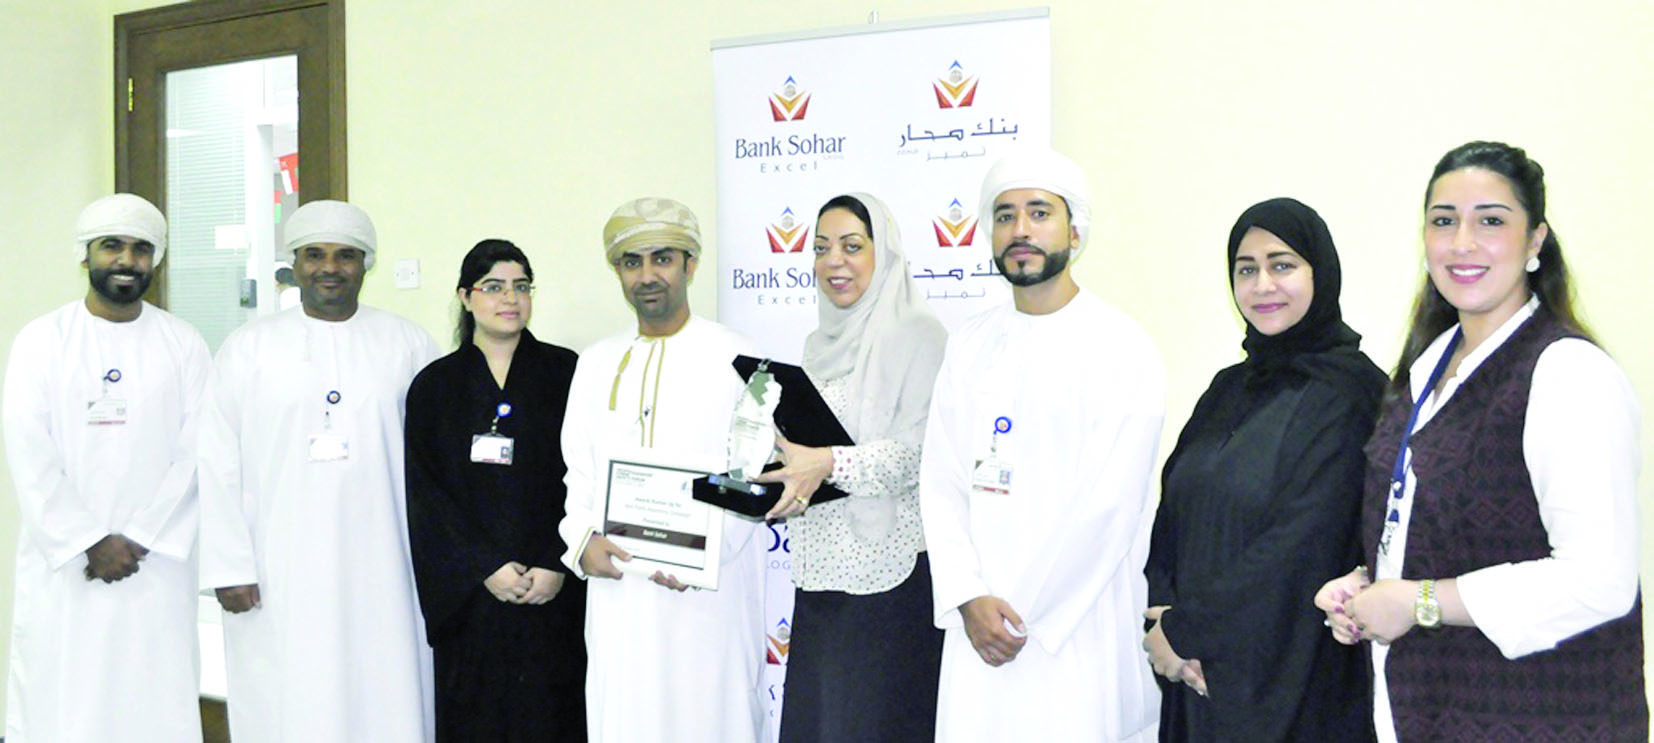 بنك صحار يتوج بجائزة "أفضل حملة توعوية للسلامة المرورية" على مستوى الوطن العربي